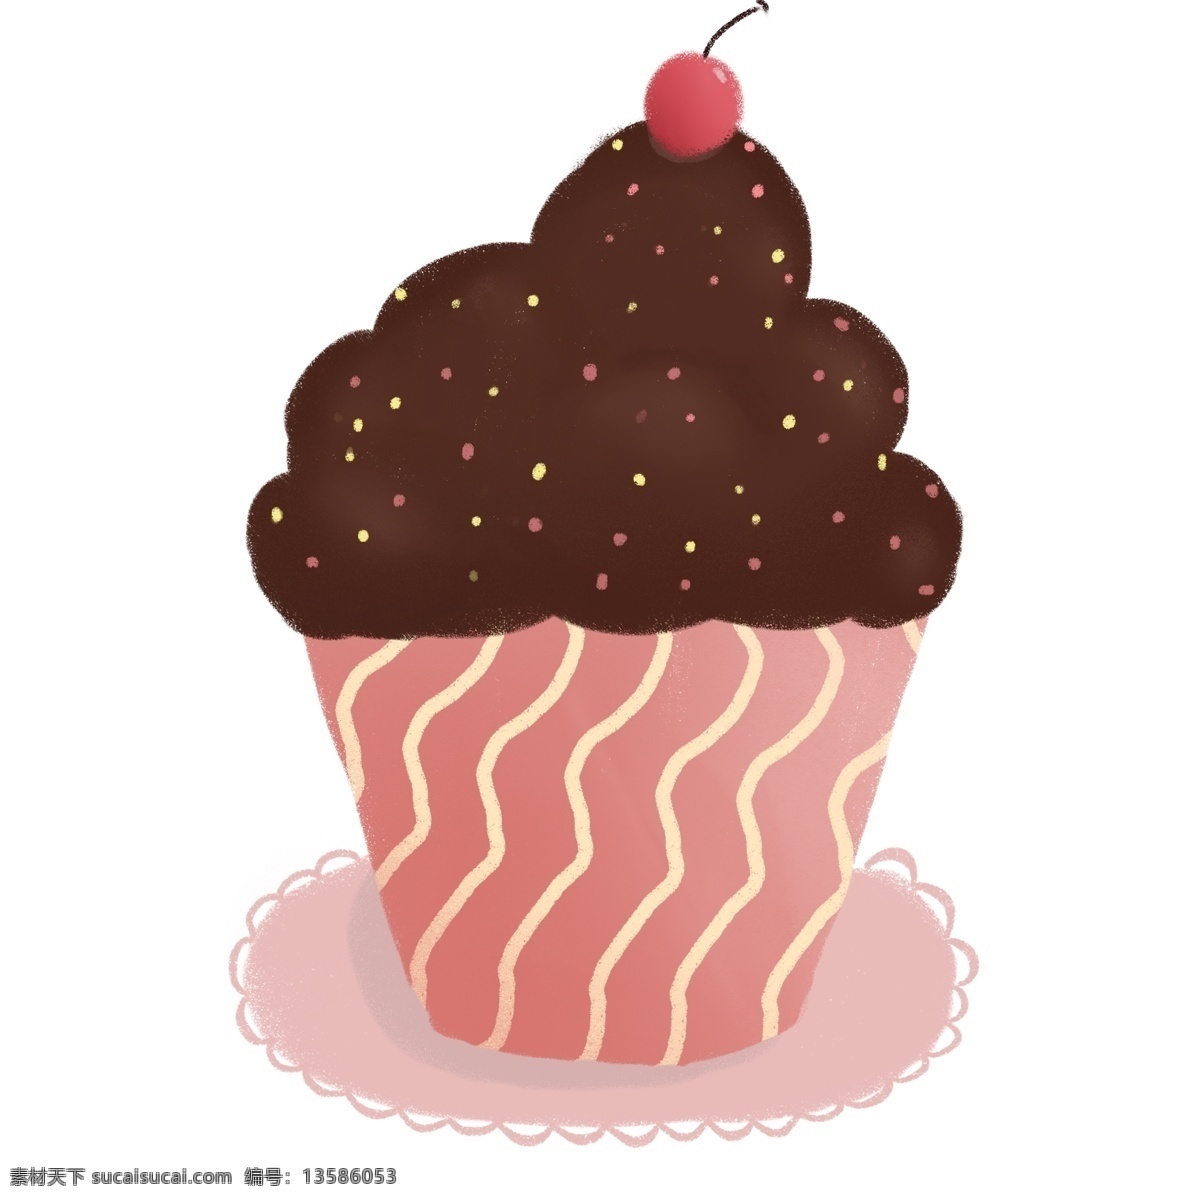 手绘 风 巧克力 蛋糕 杯 美食 食物 商用 元素 情人节 小清新 可爱 食品 手绘风 2.14 甜蜜巧克力 板巧巧克力 可商用 png元素 甜食